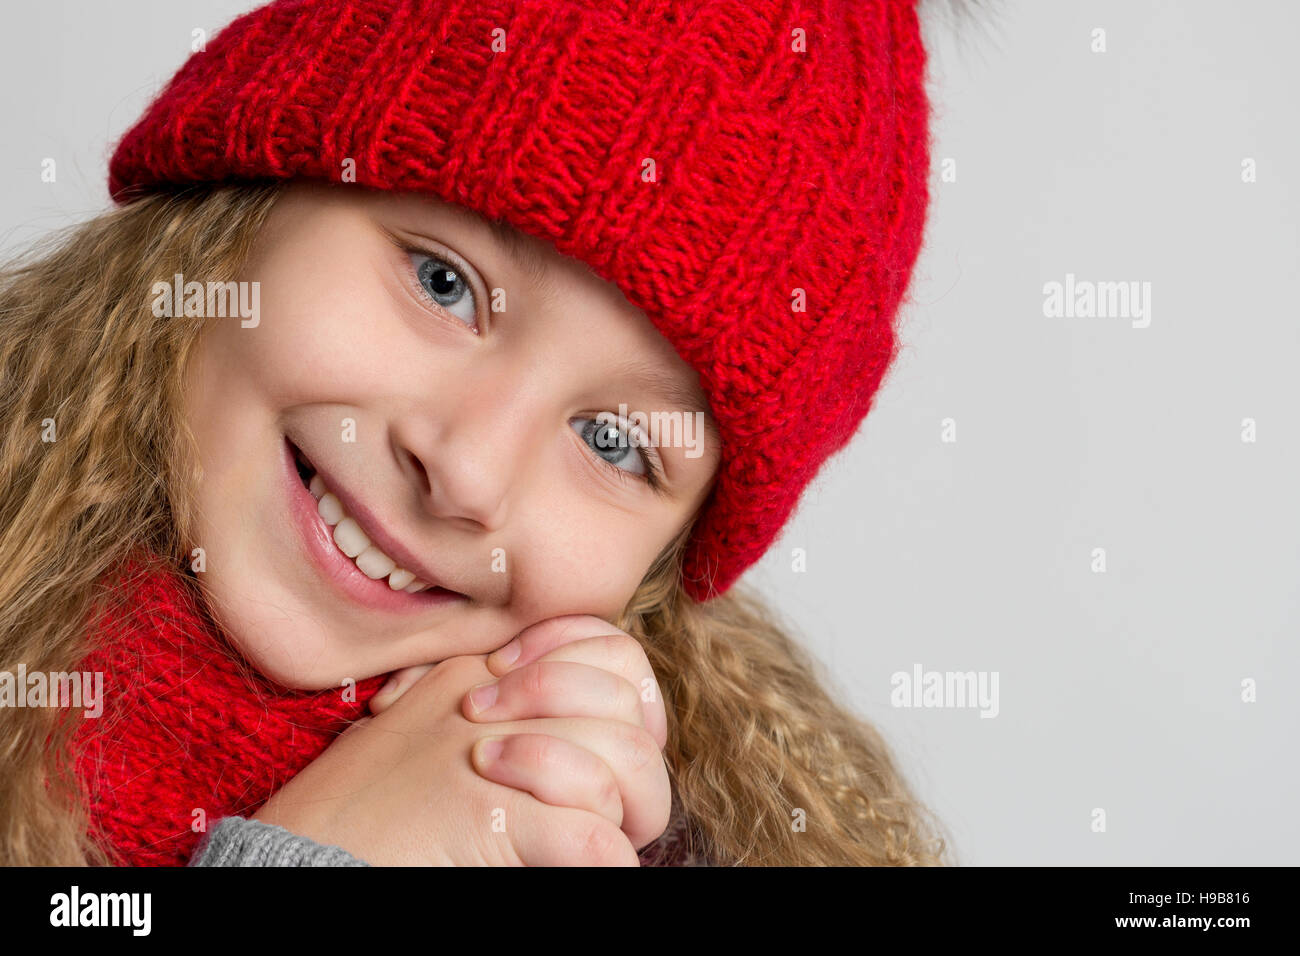 Portrait d'une belle petite fille au chapeau tricoté rouge sur un fond gris. Visage d'un enfant heureux libre Banque D'Images